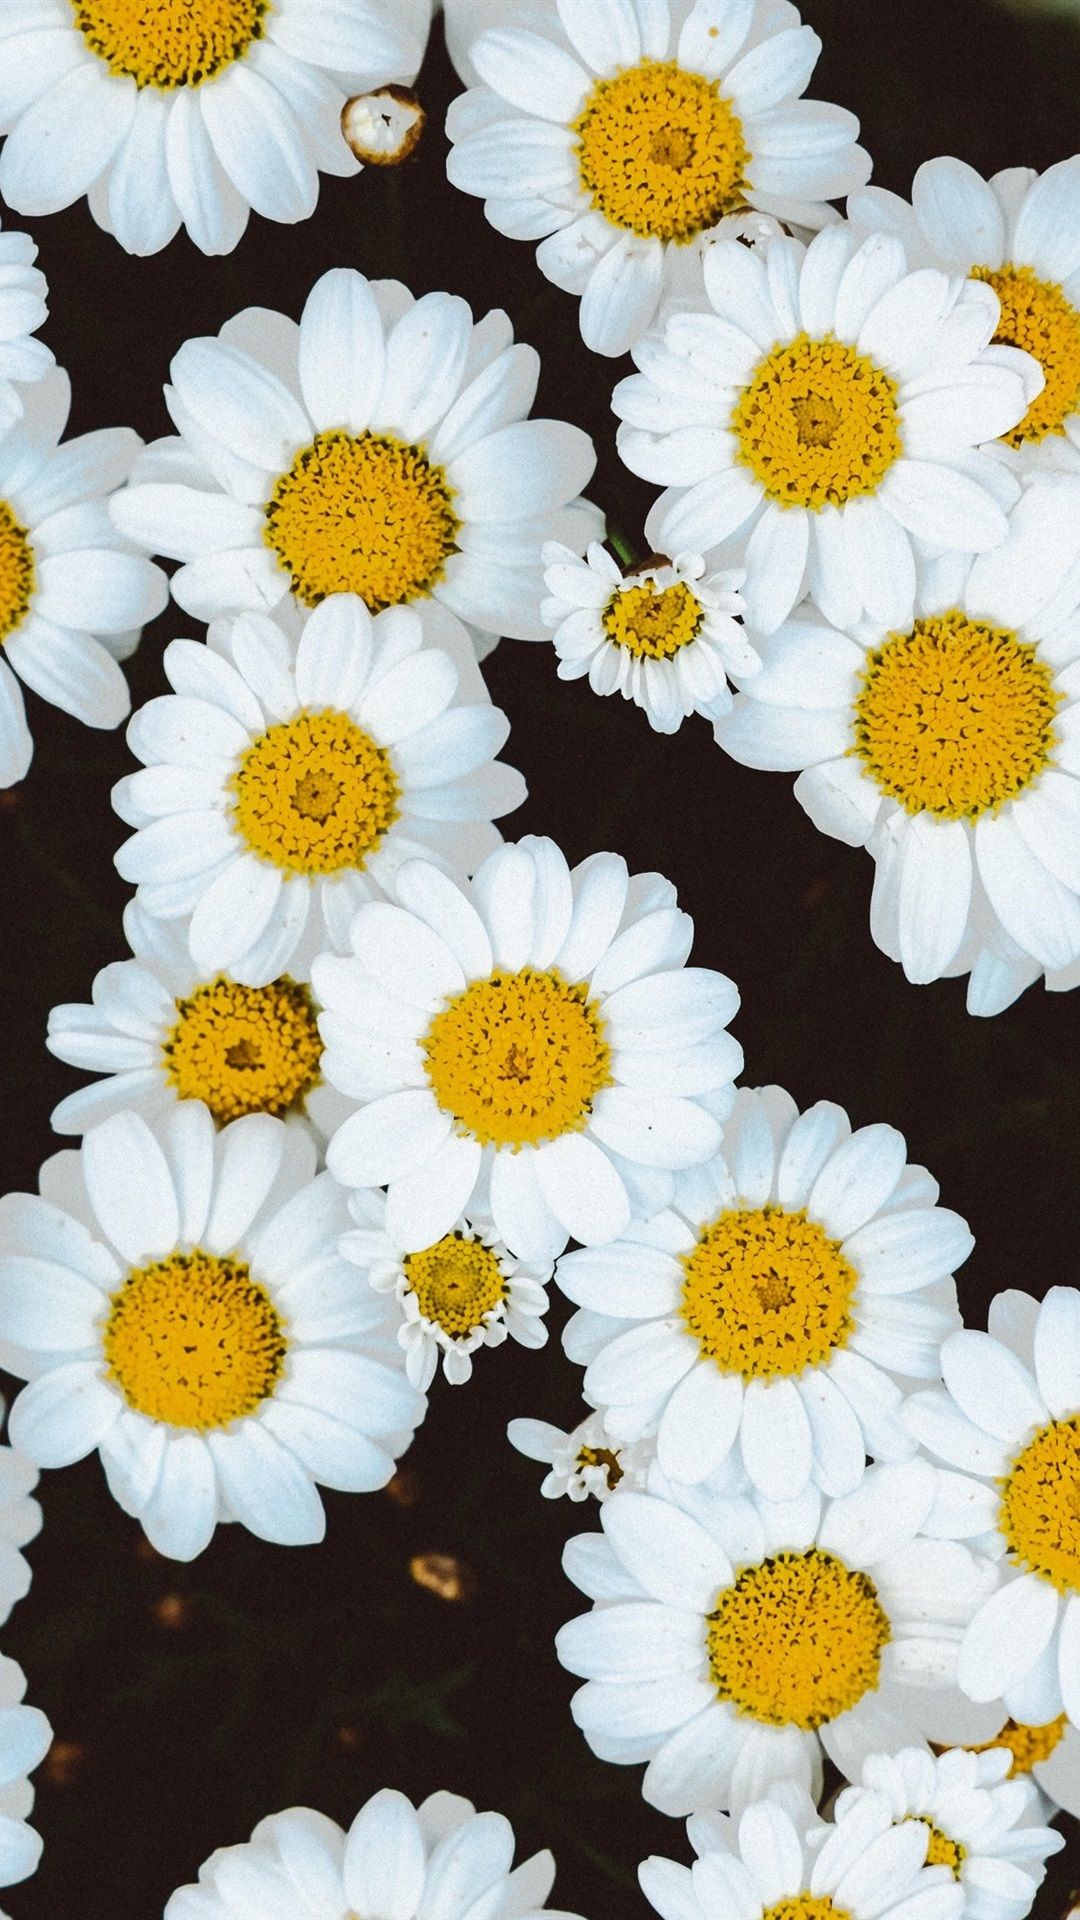  Blumen Hintergrundbild 1080x1920. Weiße Gänseblümchen Blumen Hintergrund 1080x1920 IPhone 8 7 6 6S Plus Hintergrundbilder, HD, Bild